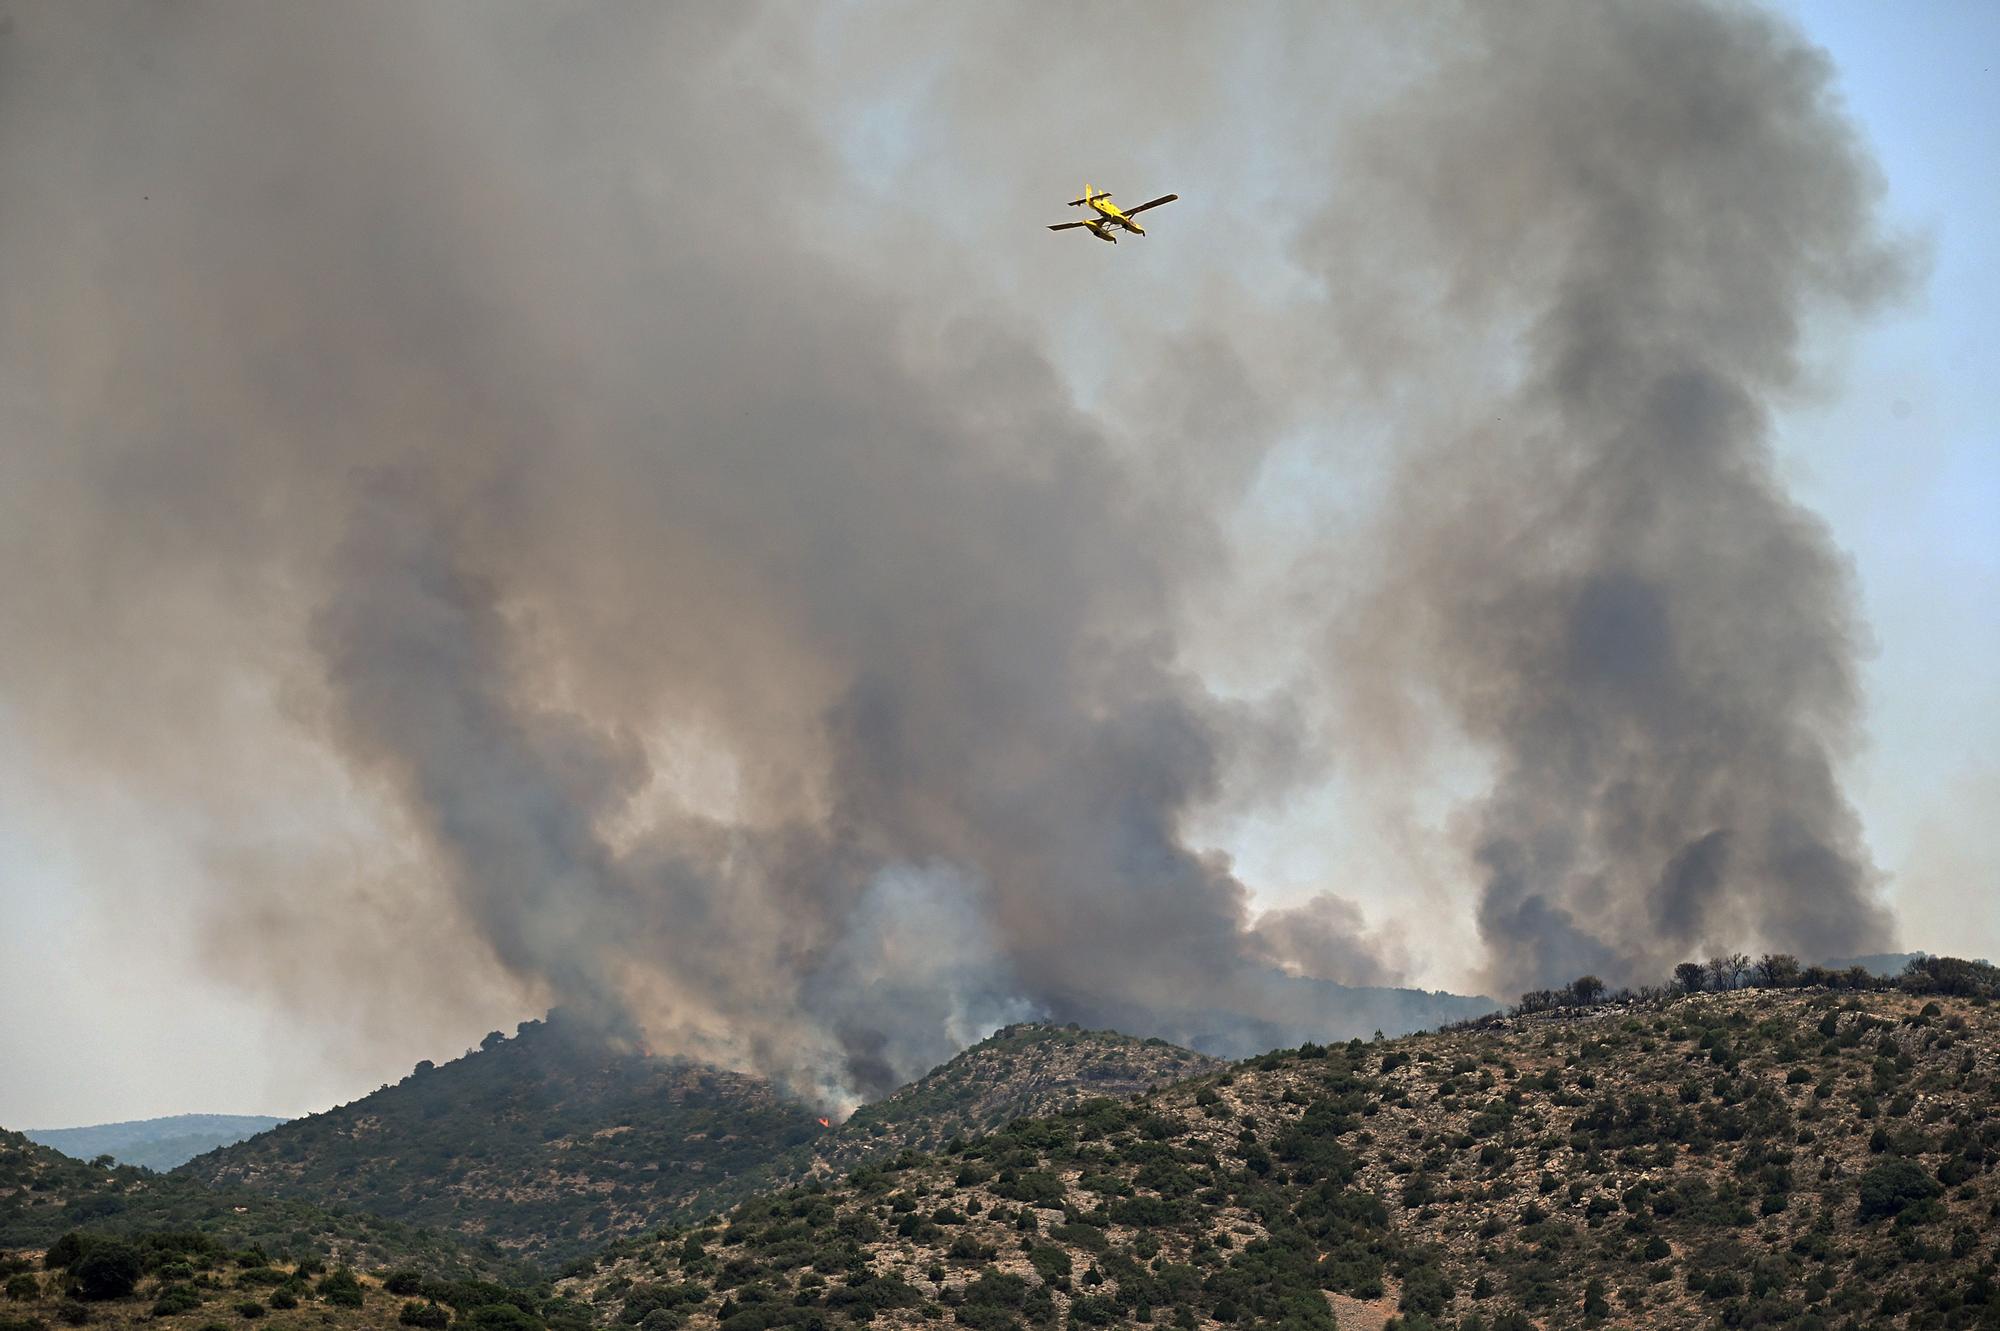 El incendio de Artesa de Segre (La Noguera) ya ha calcinado más de 500 hectáreas y amenaza seriamente la reserva natural del Montsec. El origen se sitúa justo detrás de la población de Baldomar.